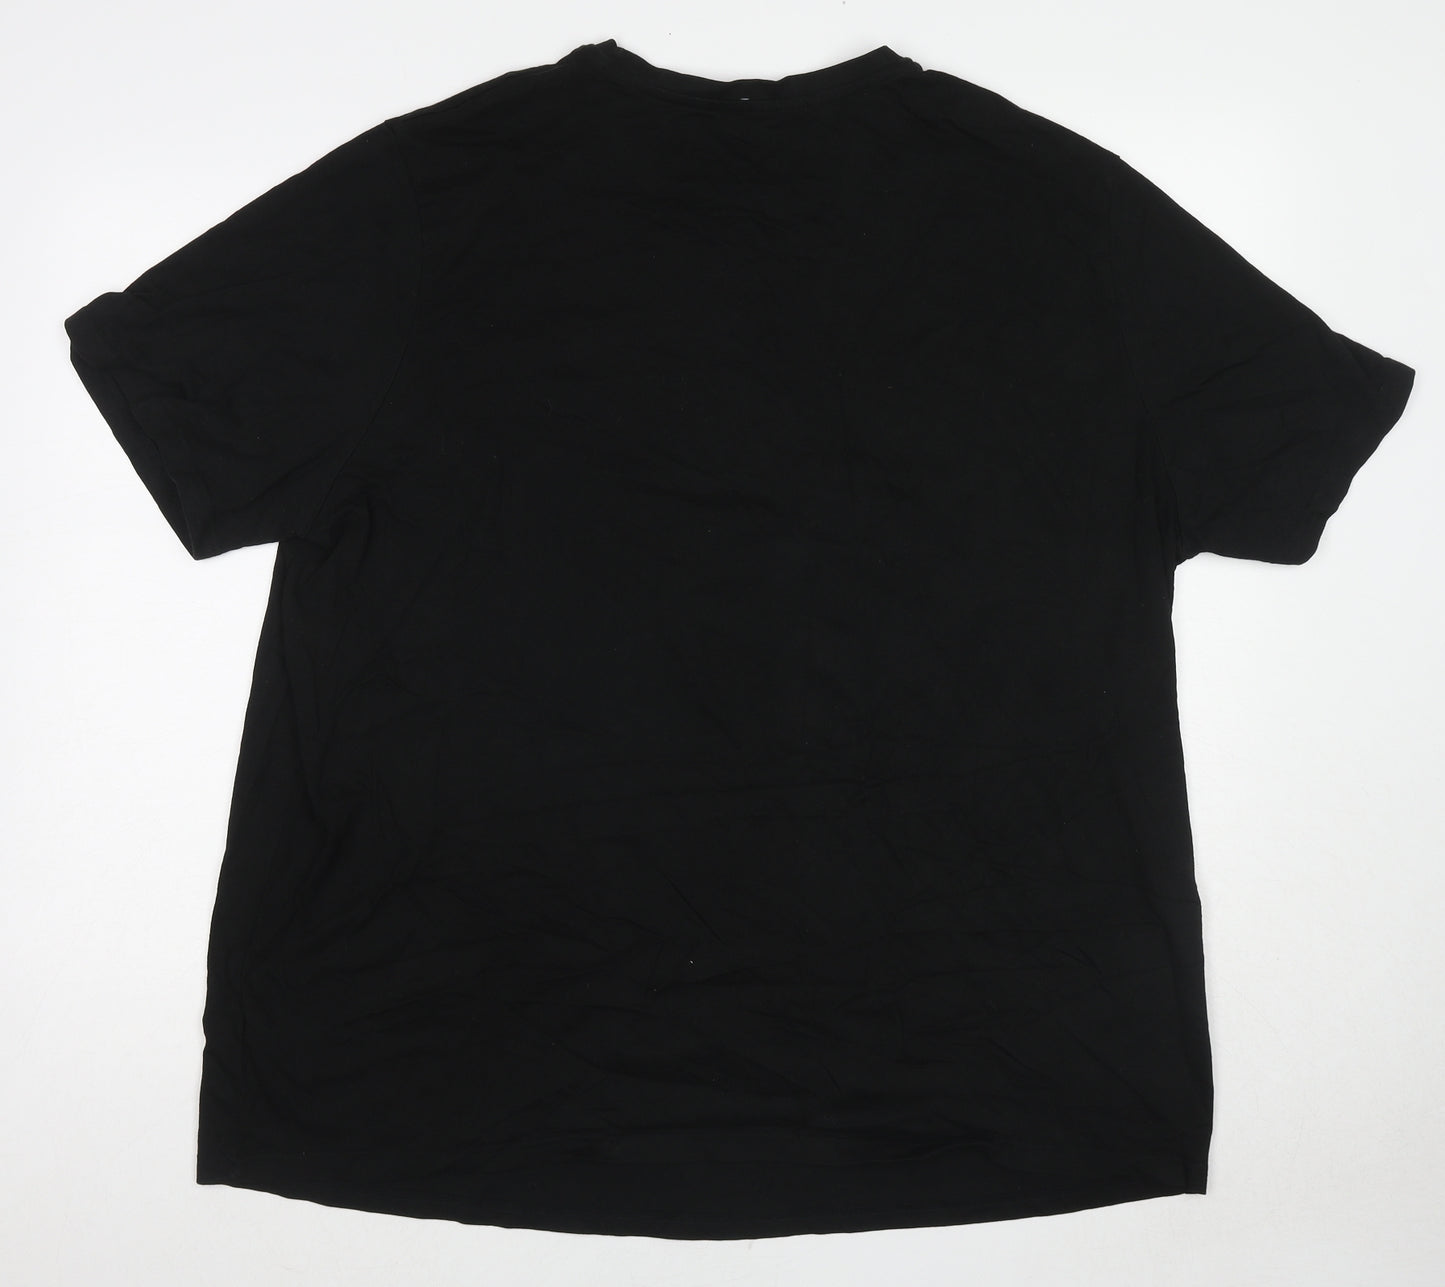 Jacamo Mens Black Cotton T-Shirt Size XL Round Neck